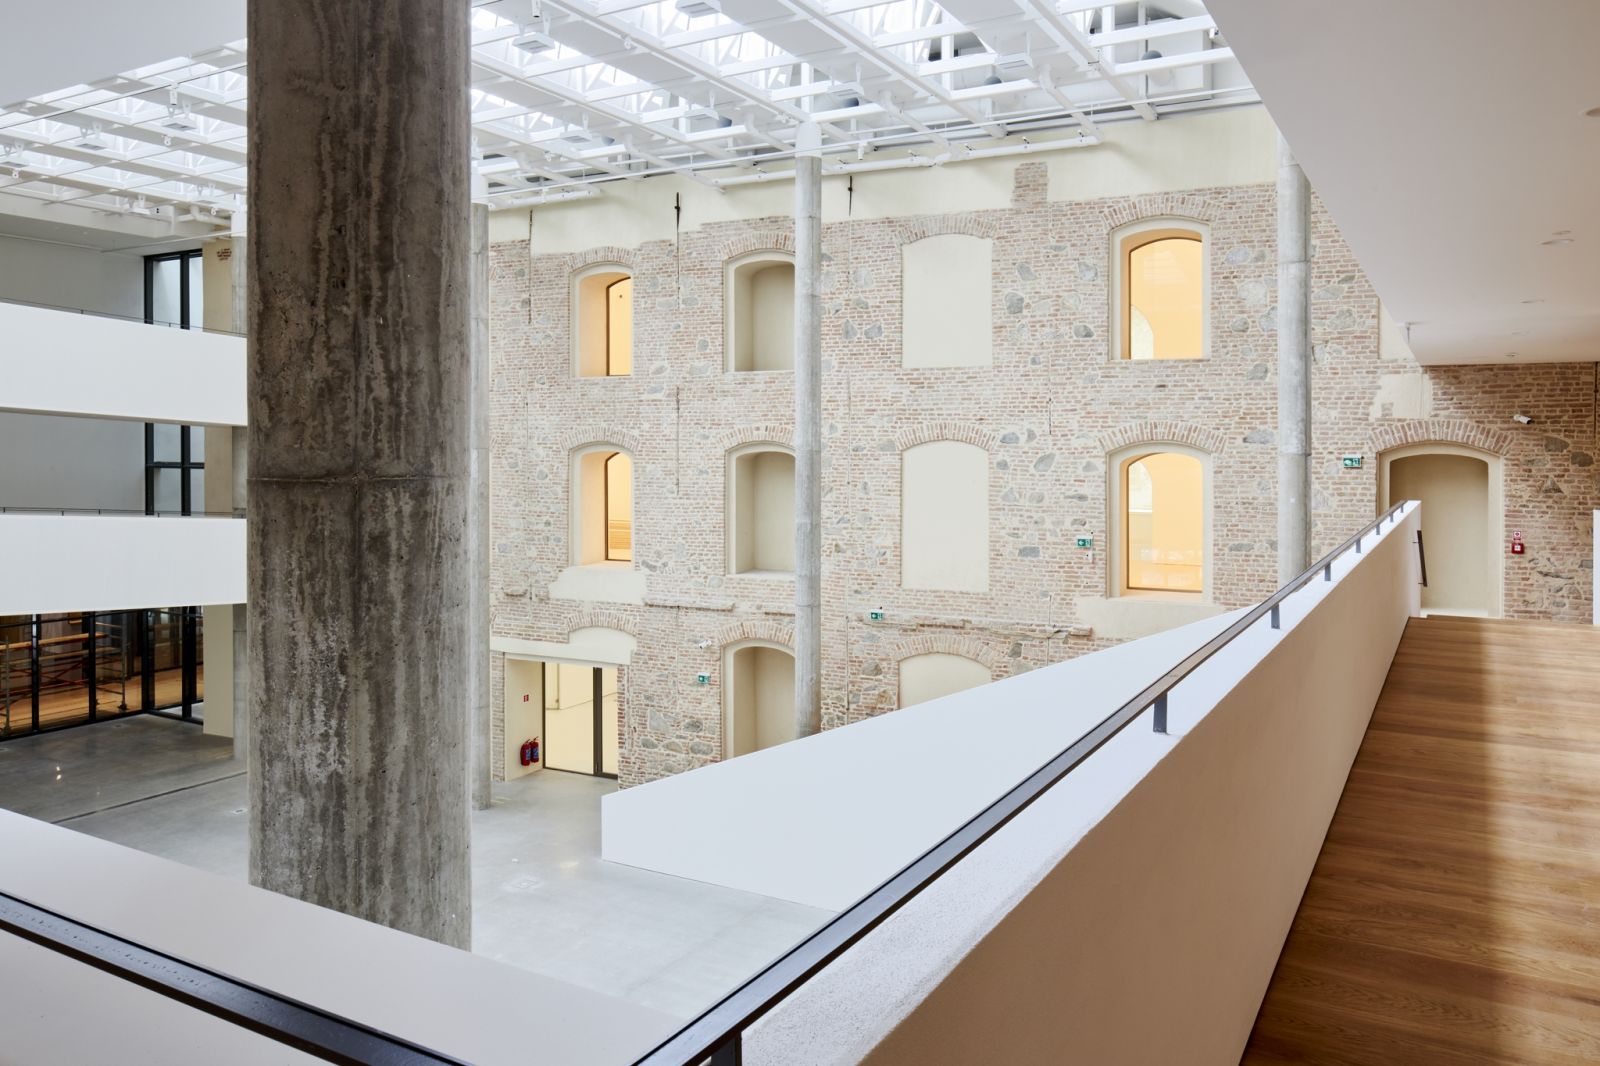 Slovenská národná galéria po 21 rokoch (po)otvára nový galerijný areál